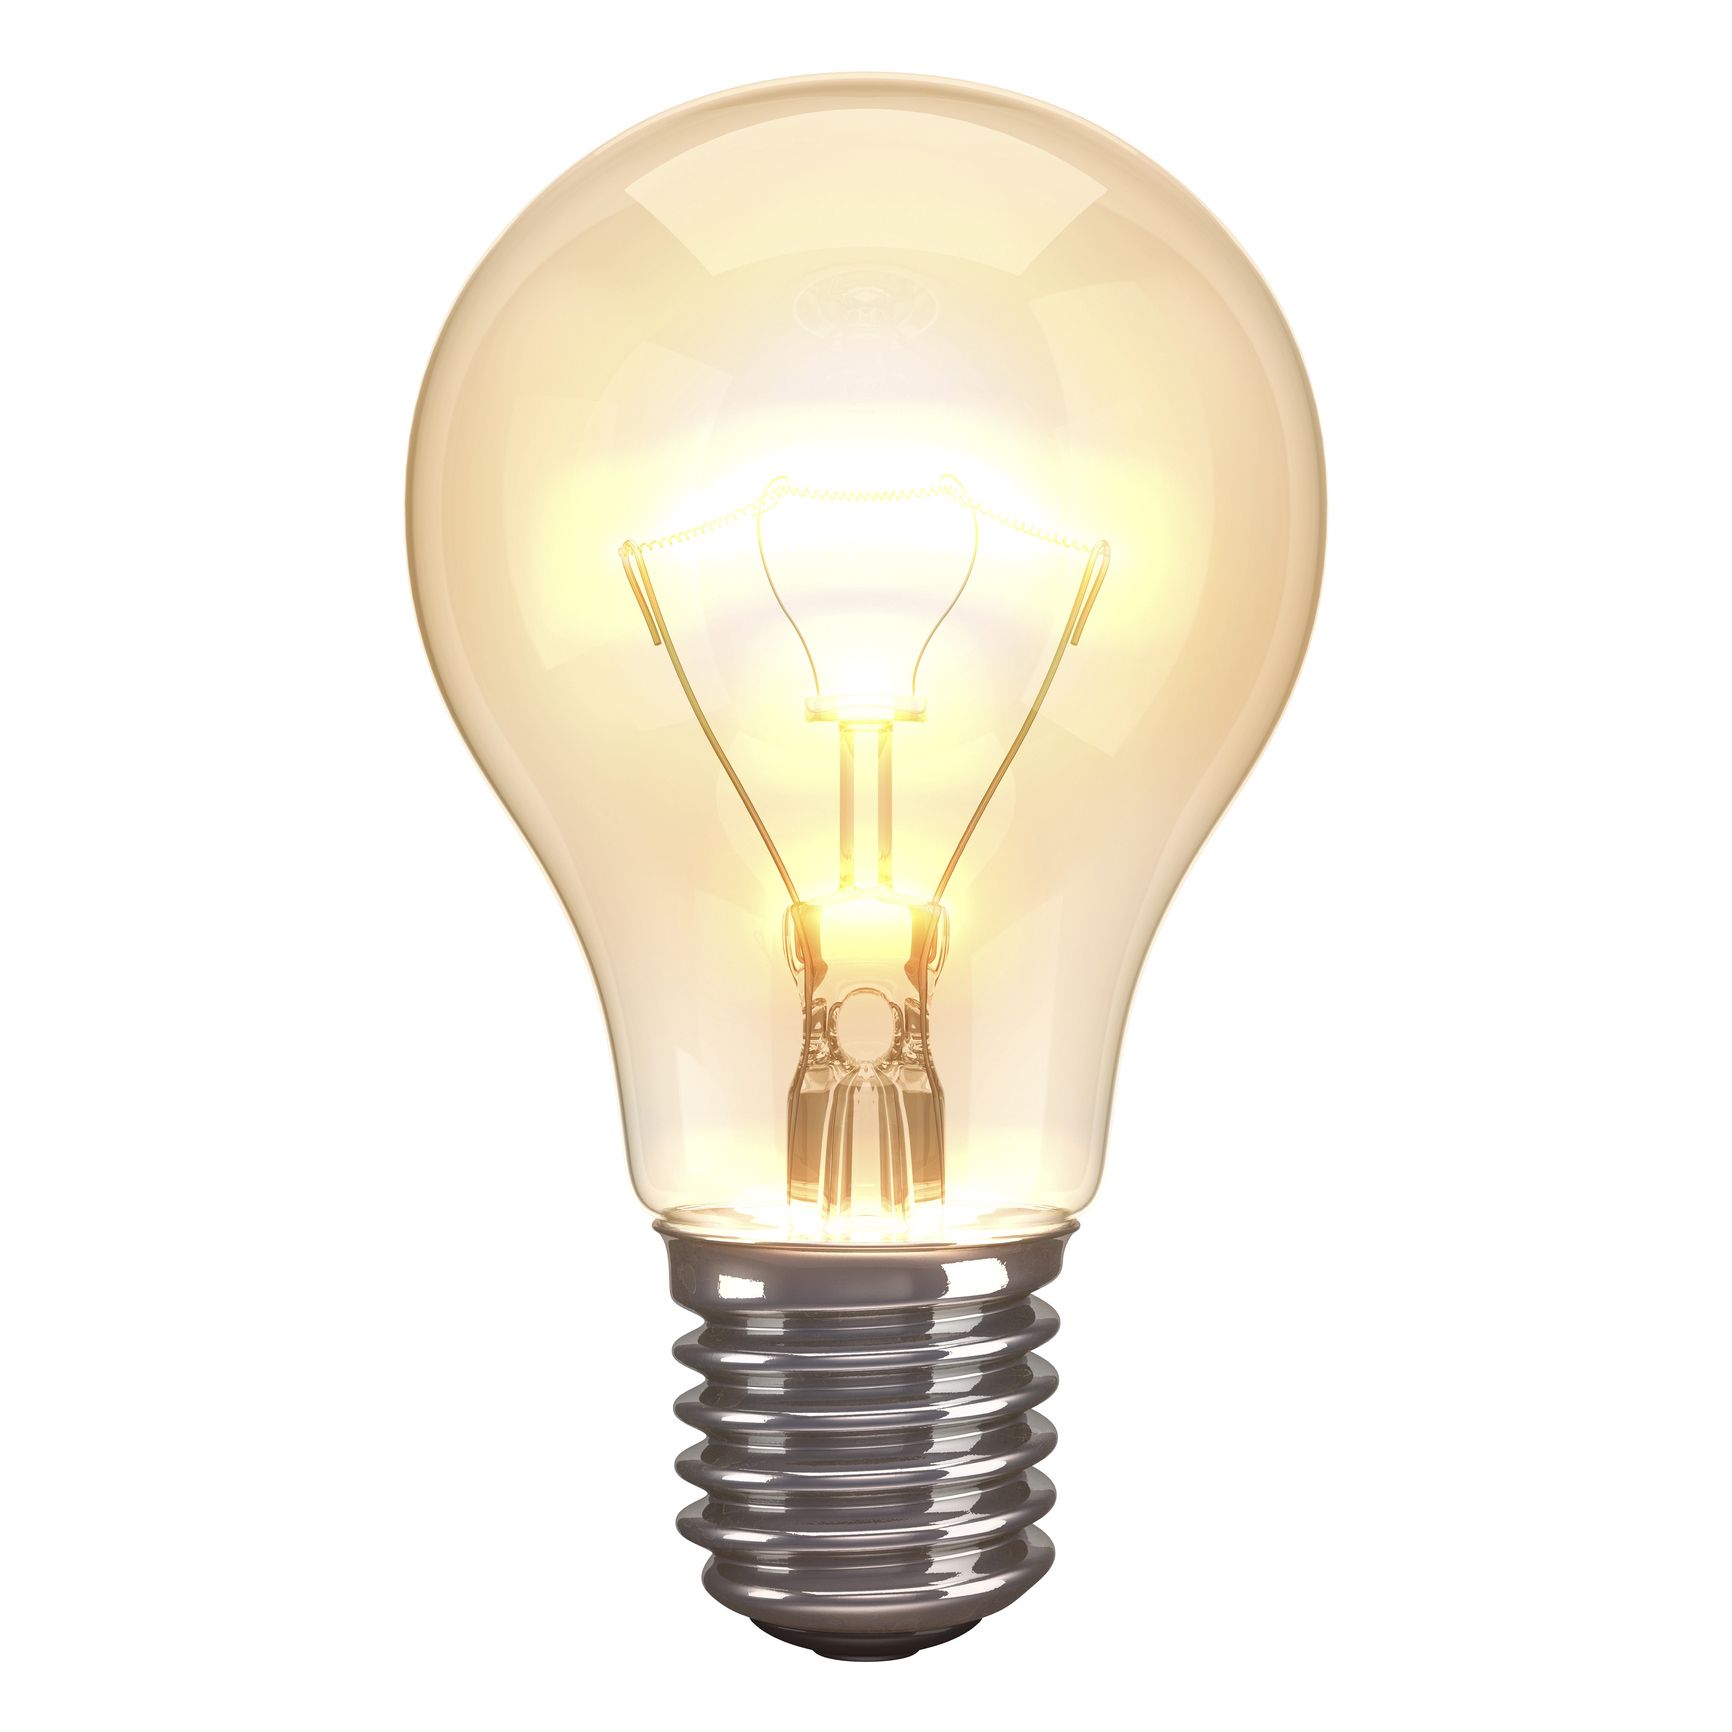 Light bulb, Incandescent light bulb, Lighting, Light, Lamp, Light fixture, Yellow, Compact fluorescent lamp, Fluorescent lamp, Electricity, 